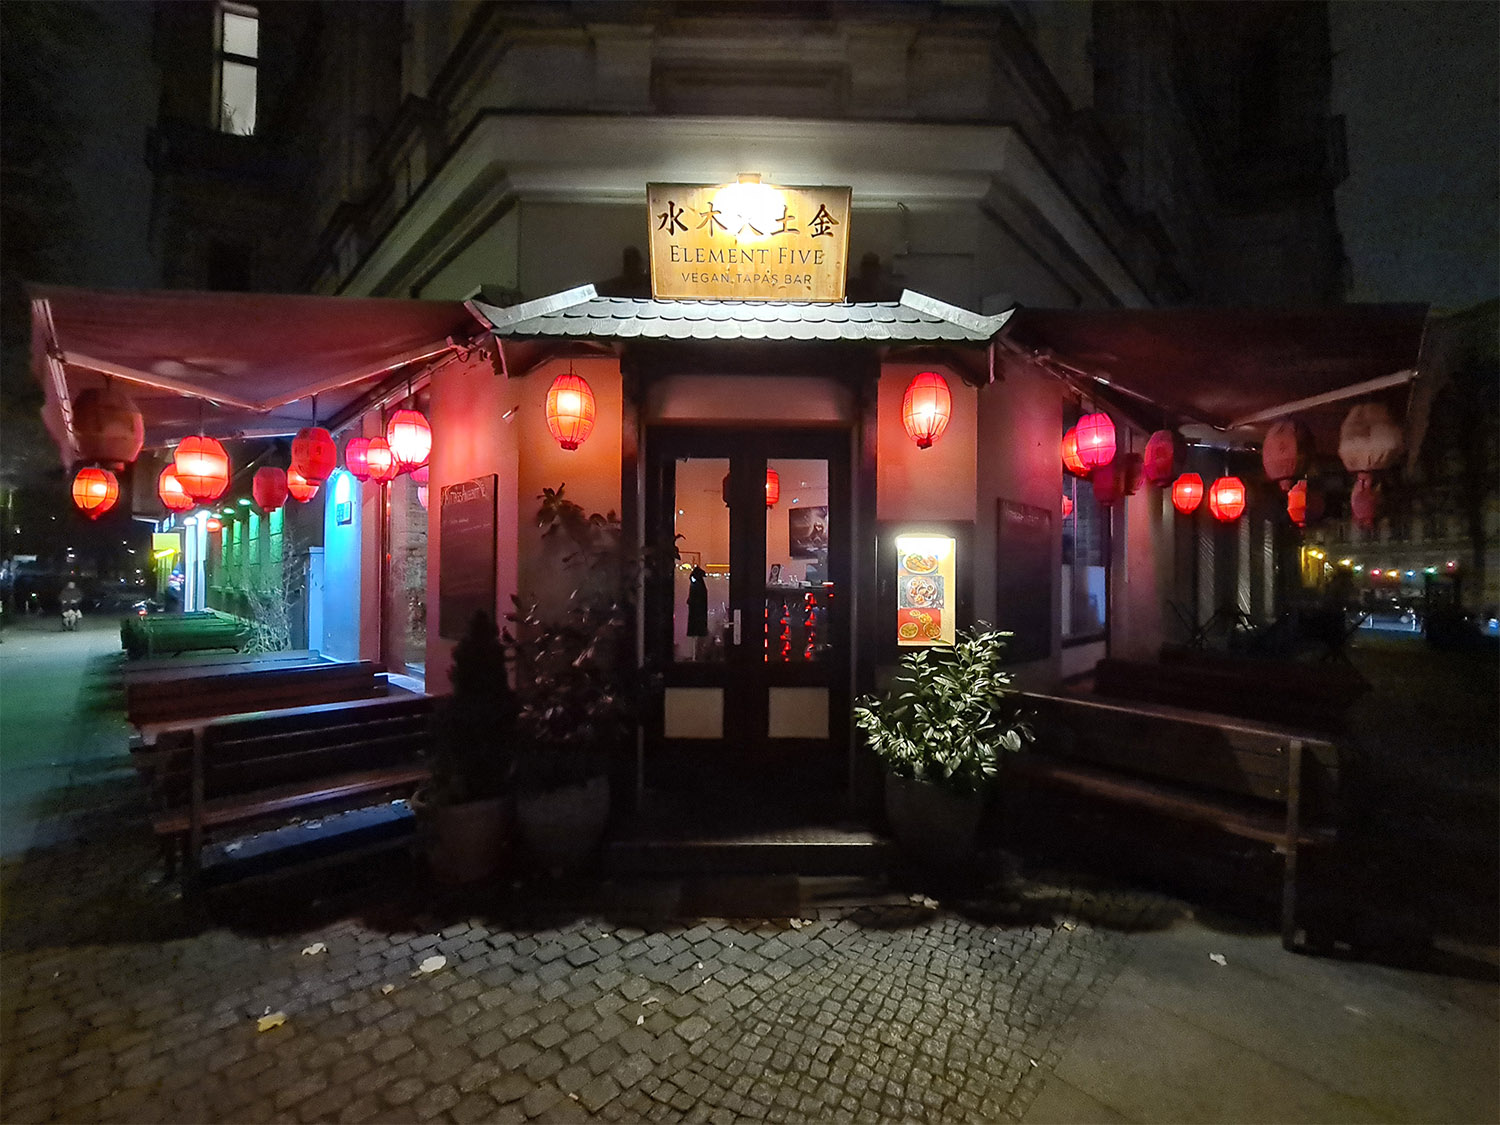 Das Element Five gehört zu den besten veganen asiatischen Restaurants in Berlin.